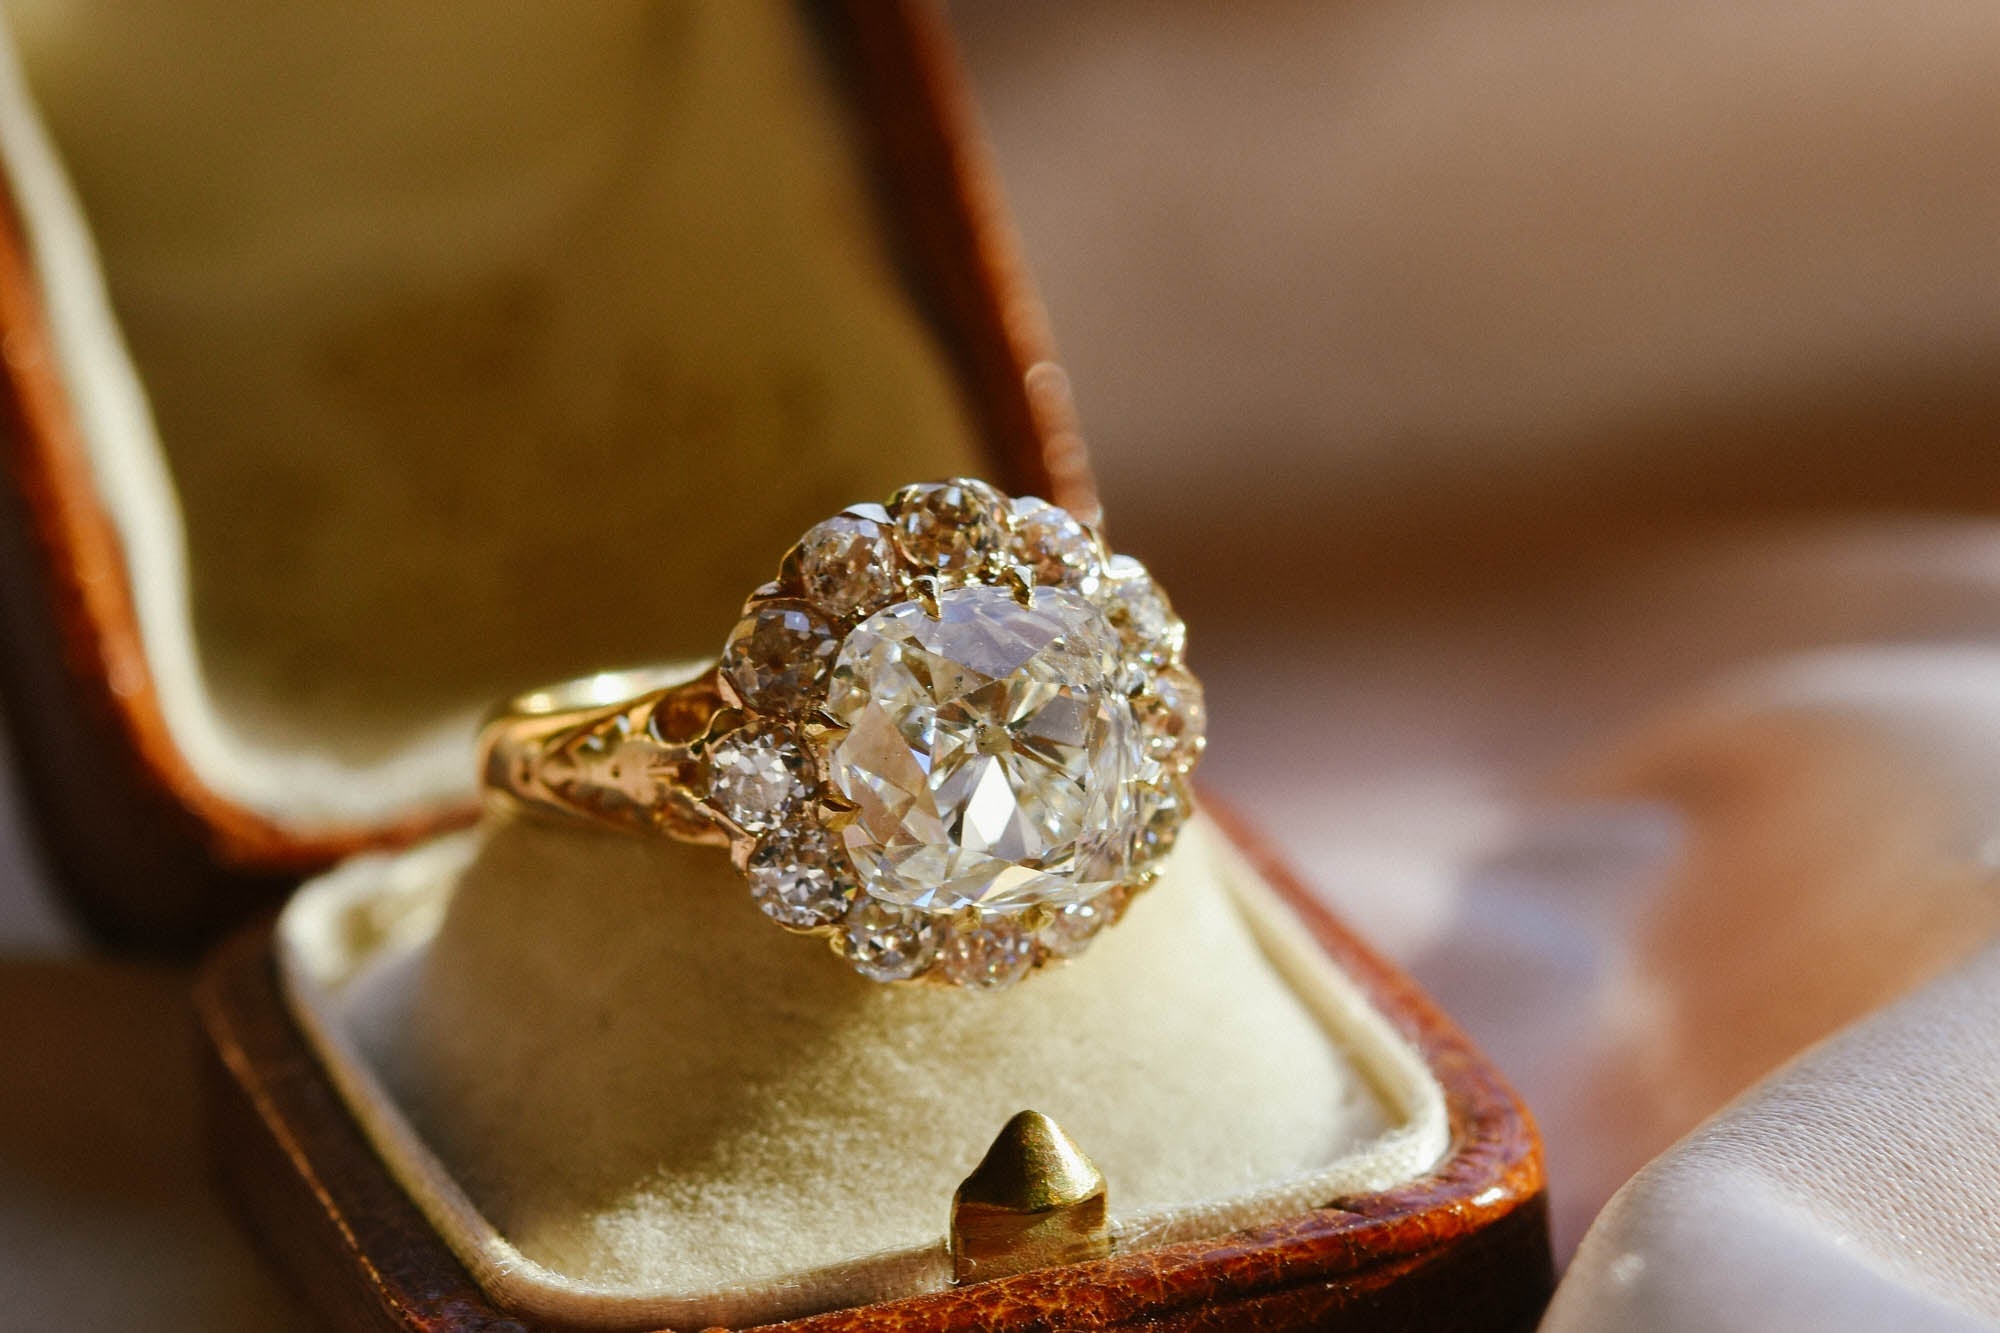 Buy Vintage Engagement Rings | Vintage Diamond Rings - Friendly Diamonds